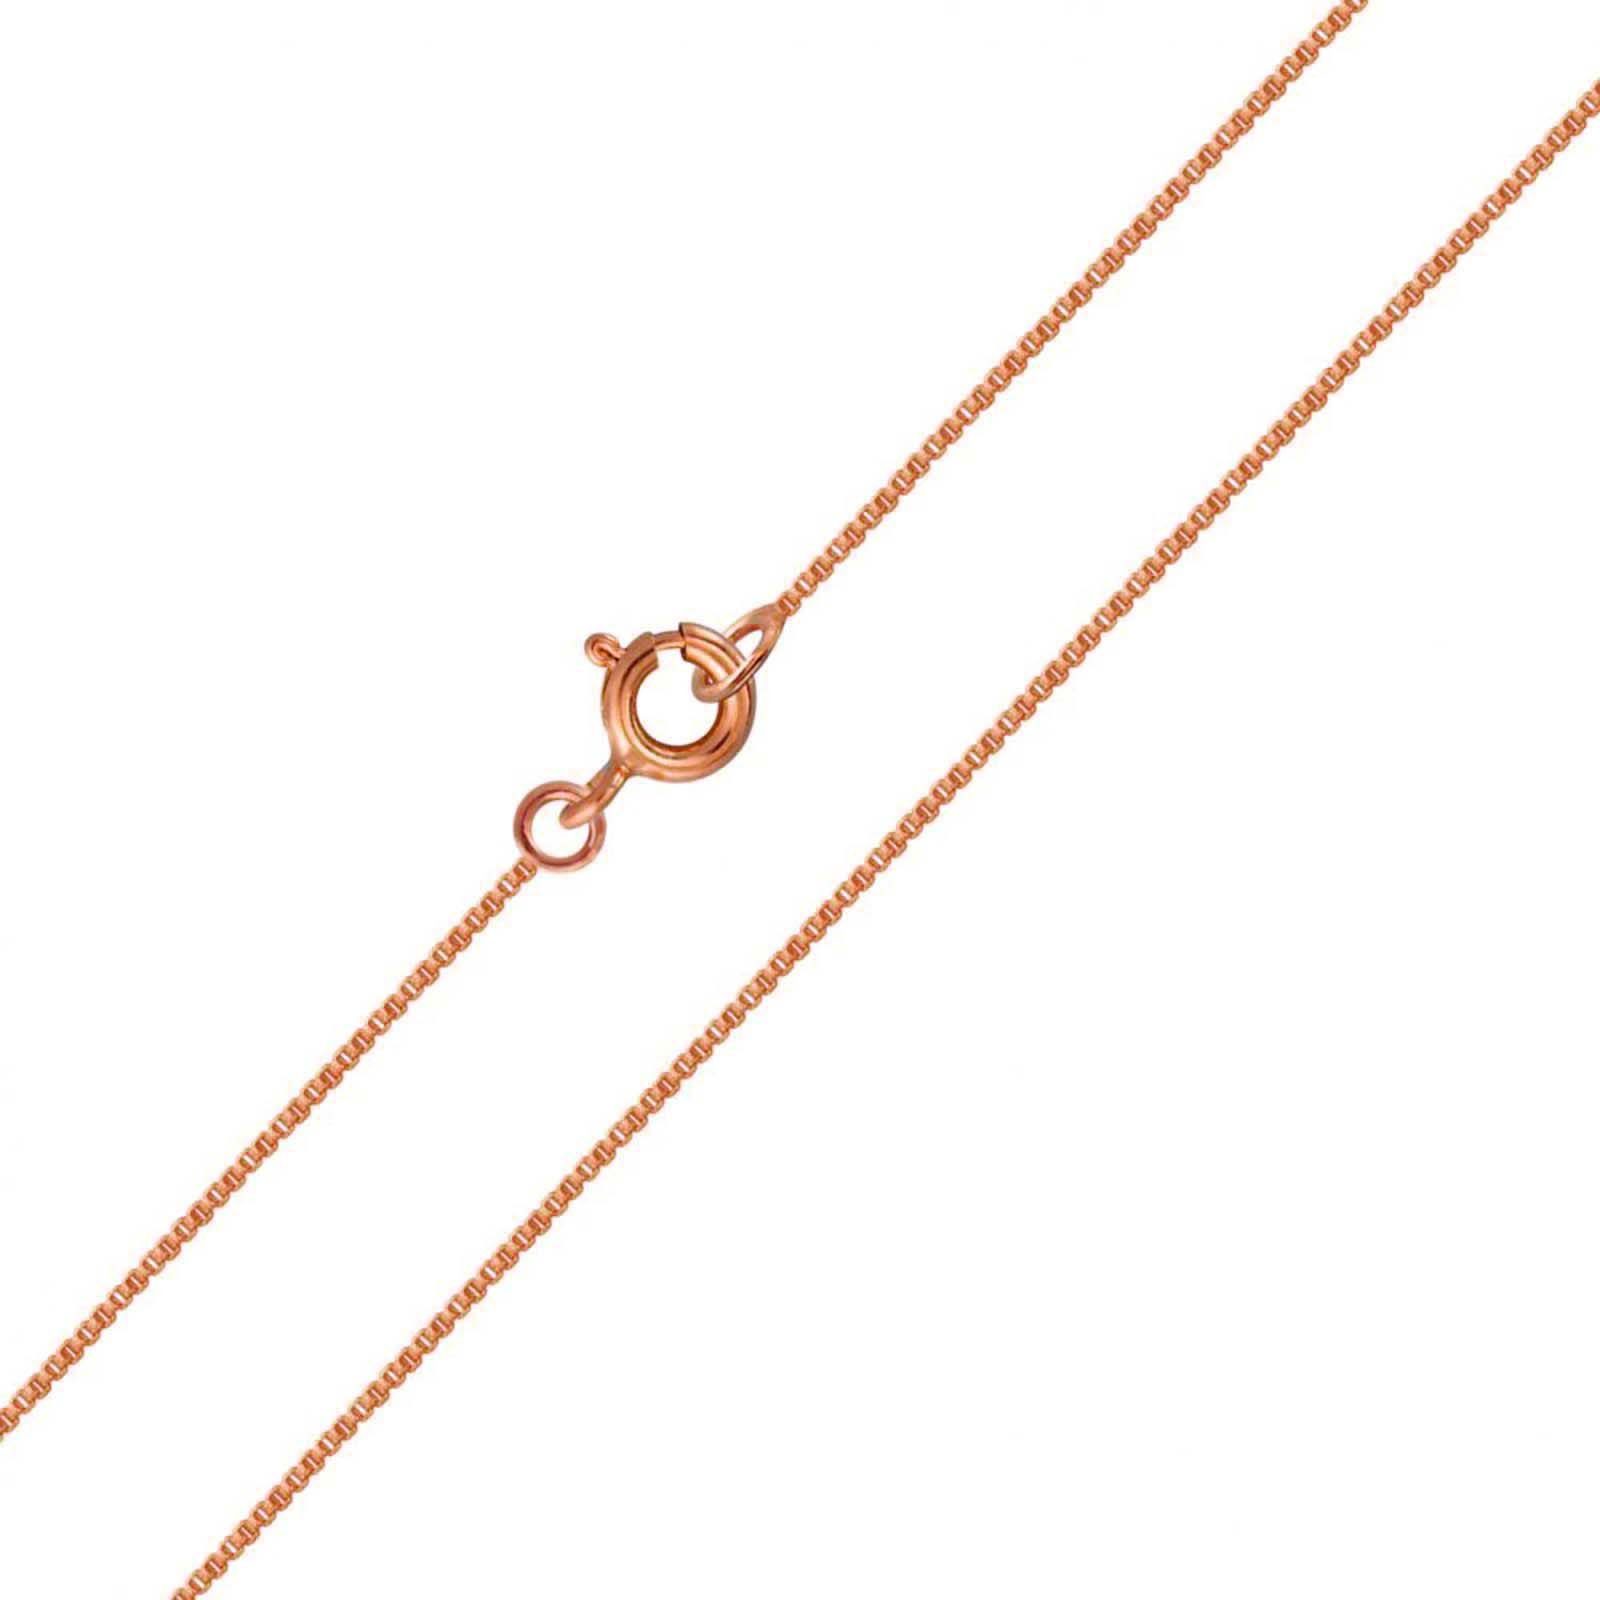 schmuck23 Kettenanhänger (Halskette mit Anhänger), Silberanhänger Kettenanhänger Halskette Kinderschmuck